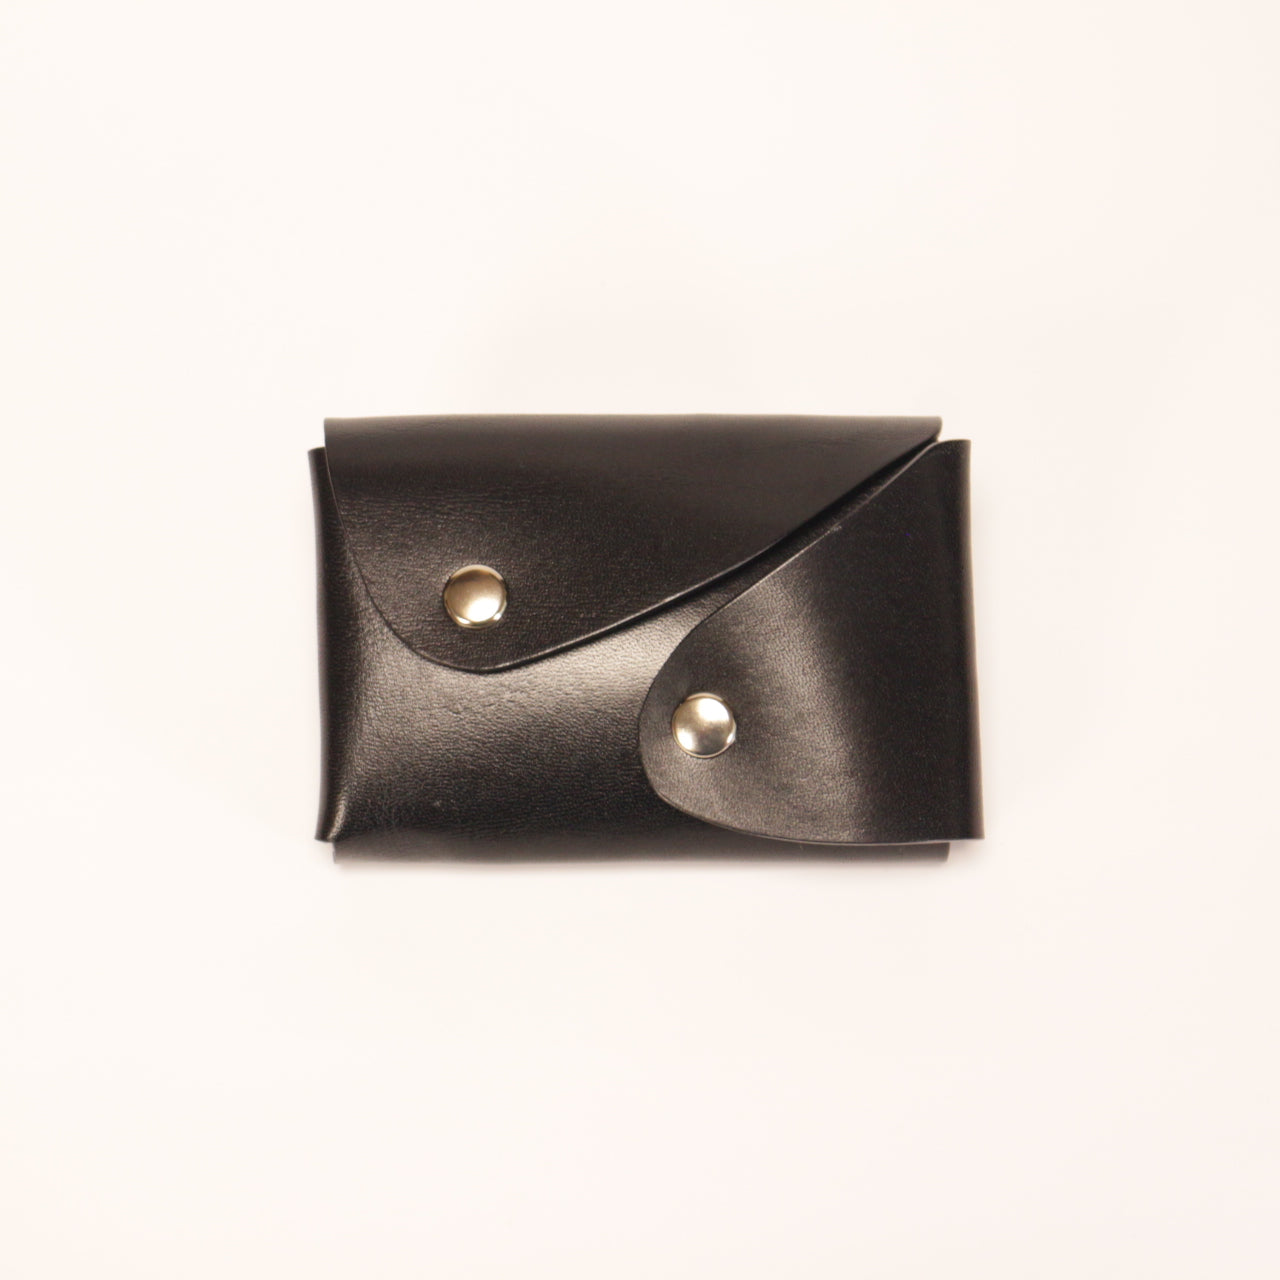 -mini Litos- Mini Litos Mini wallet that makes it easy to take coins